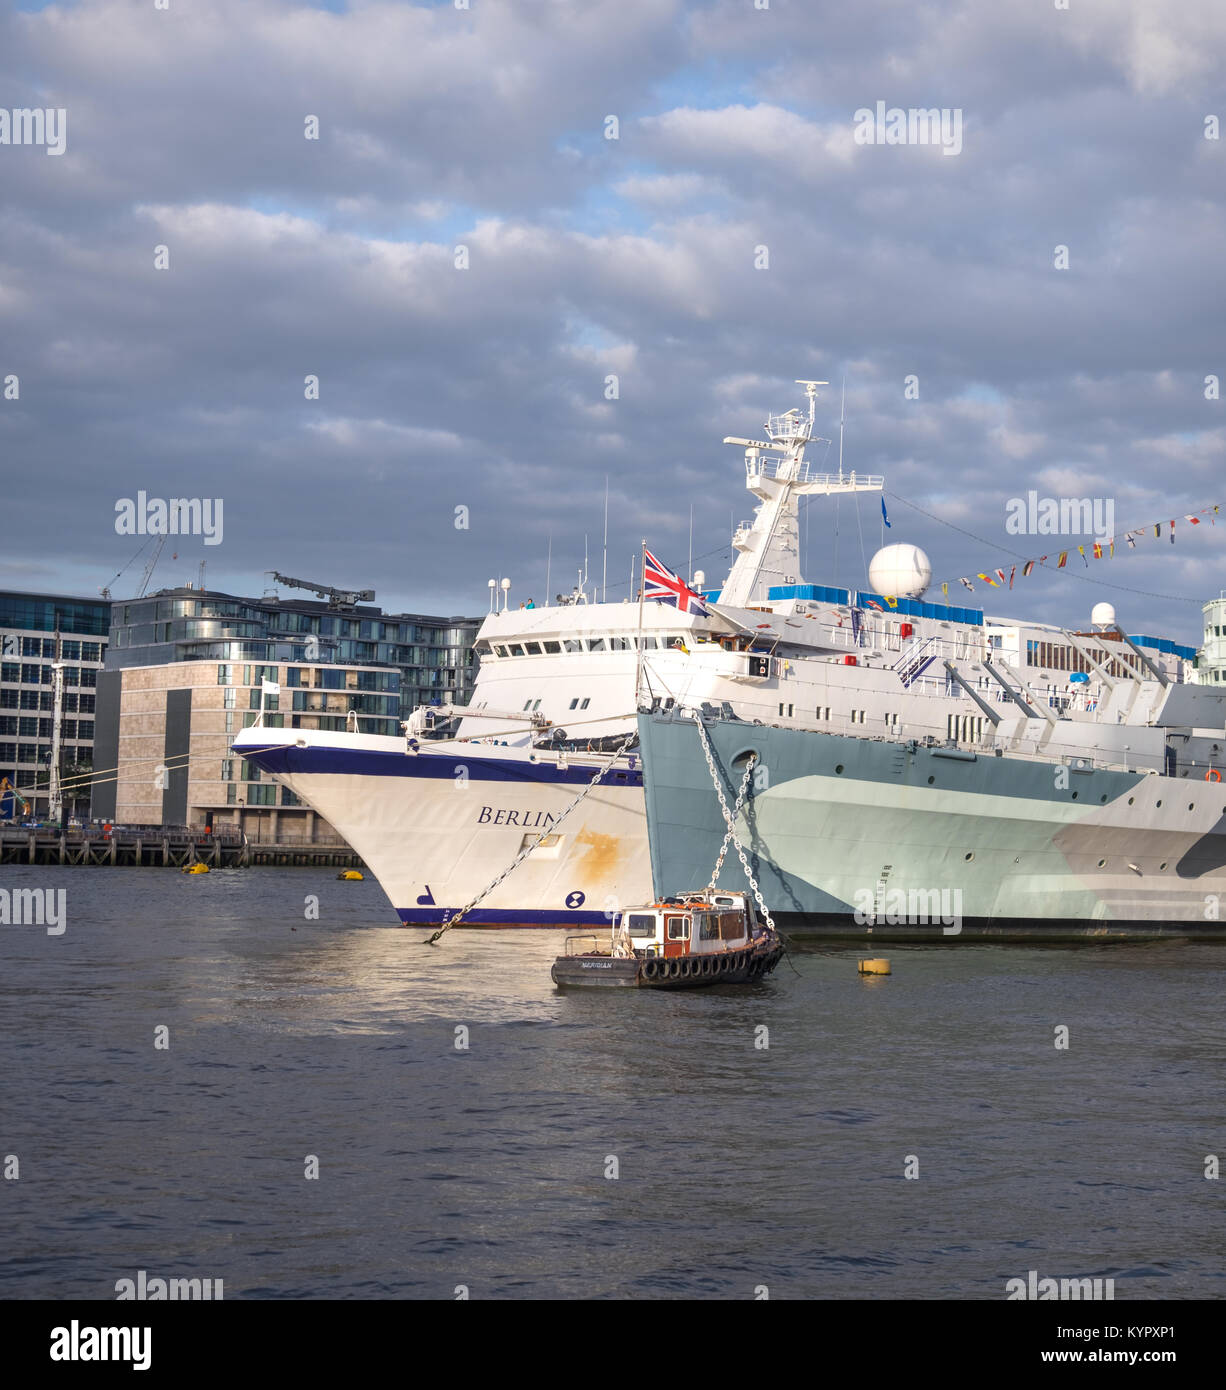 LONDON, Großbritannien - 9. Mai 2015: Passenger (Cruise) Ship 'Berlin' neben 'HMS Belfast Auf der Themse unter dramatischen Himmel. Panoramablick auf das Bild. Stockfoto